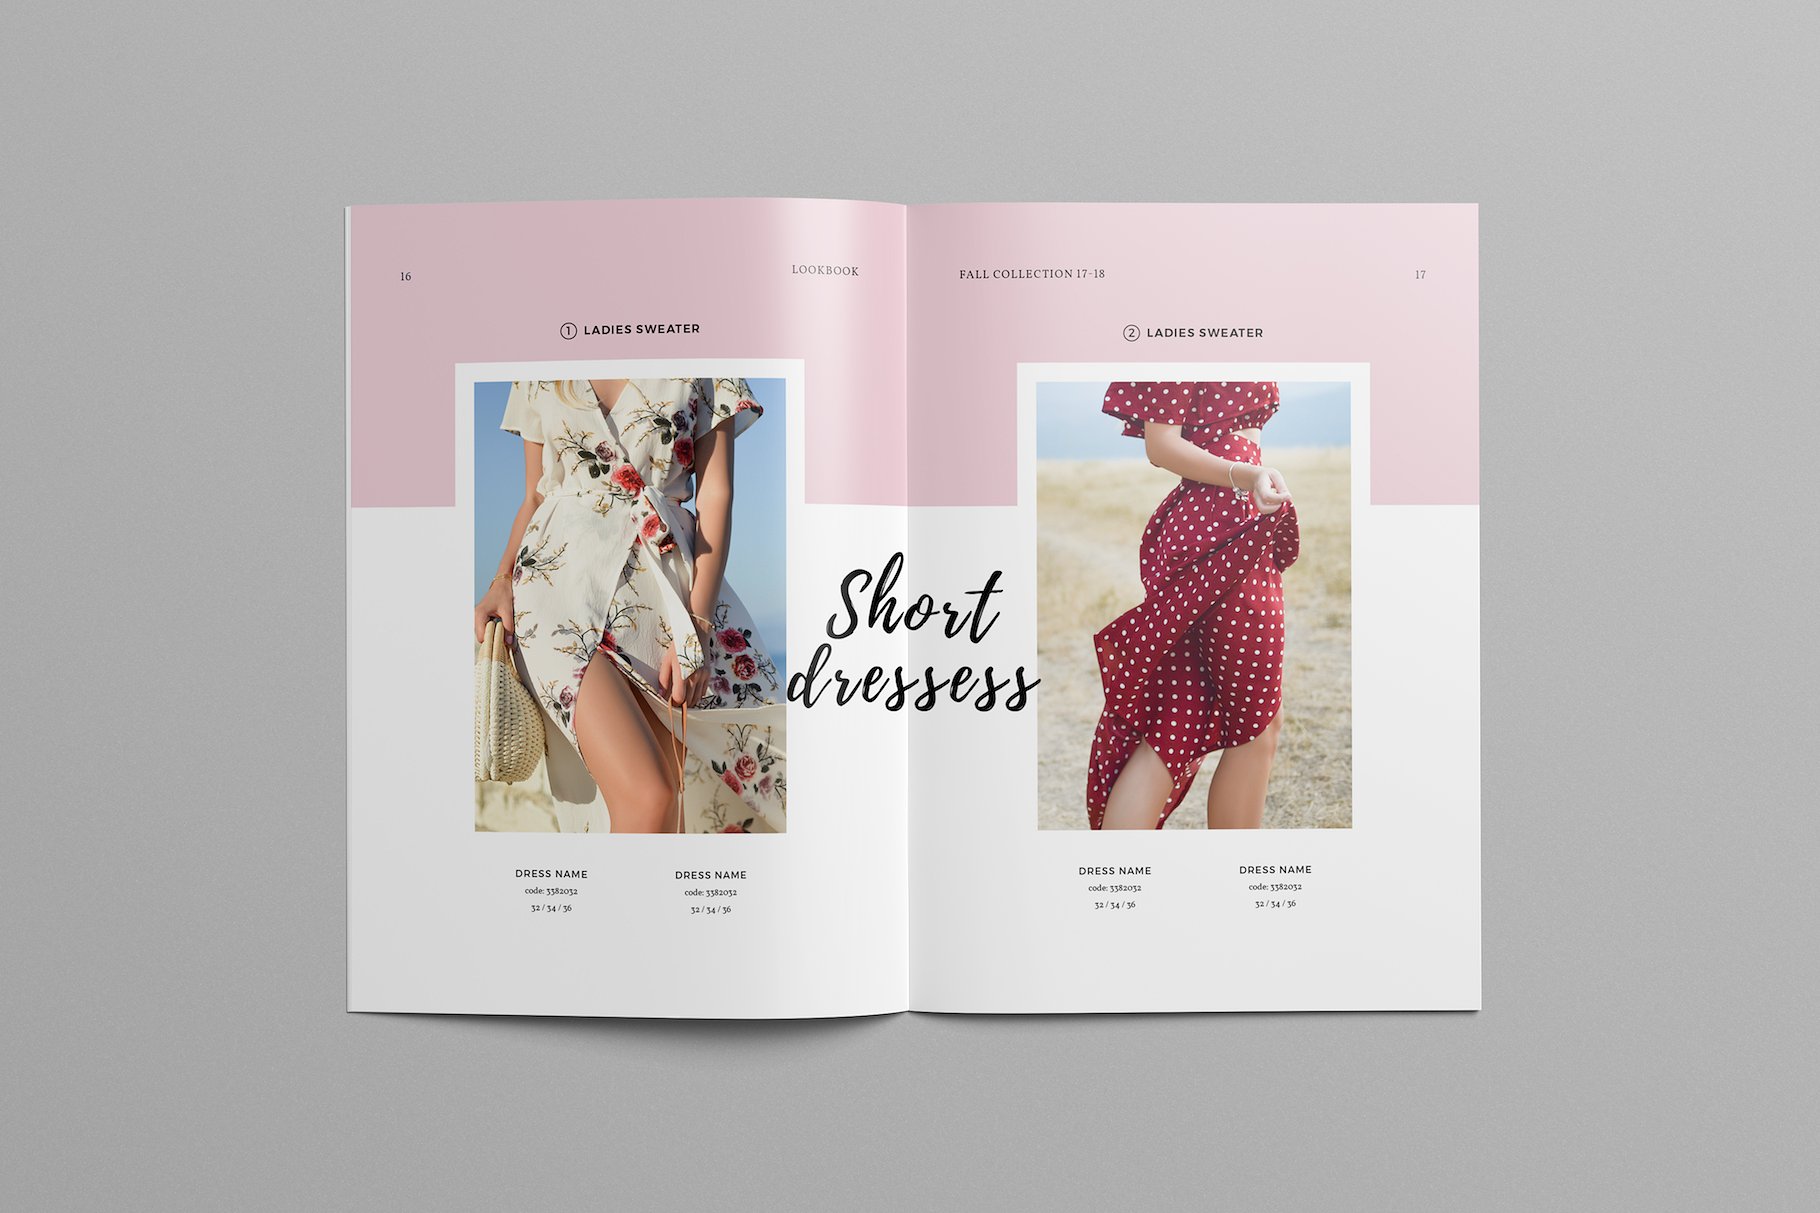 时尚极简的服装目录杂志模板下载 Fashion Catalog Lookbook Template [indd]插图6